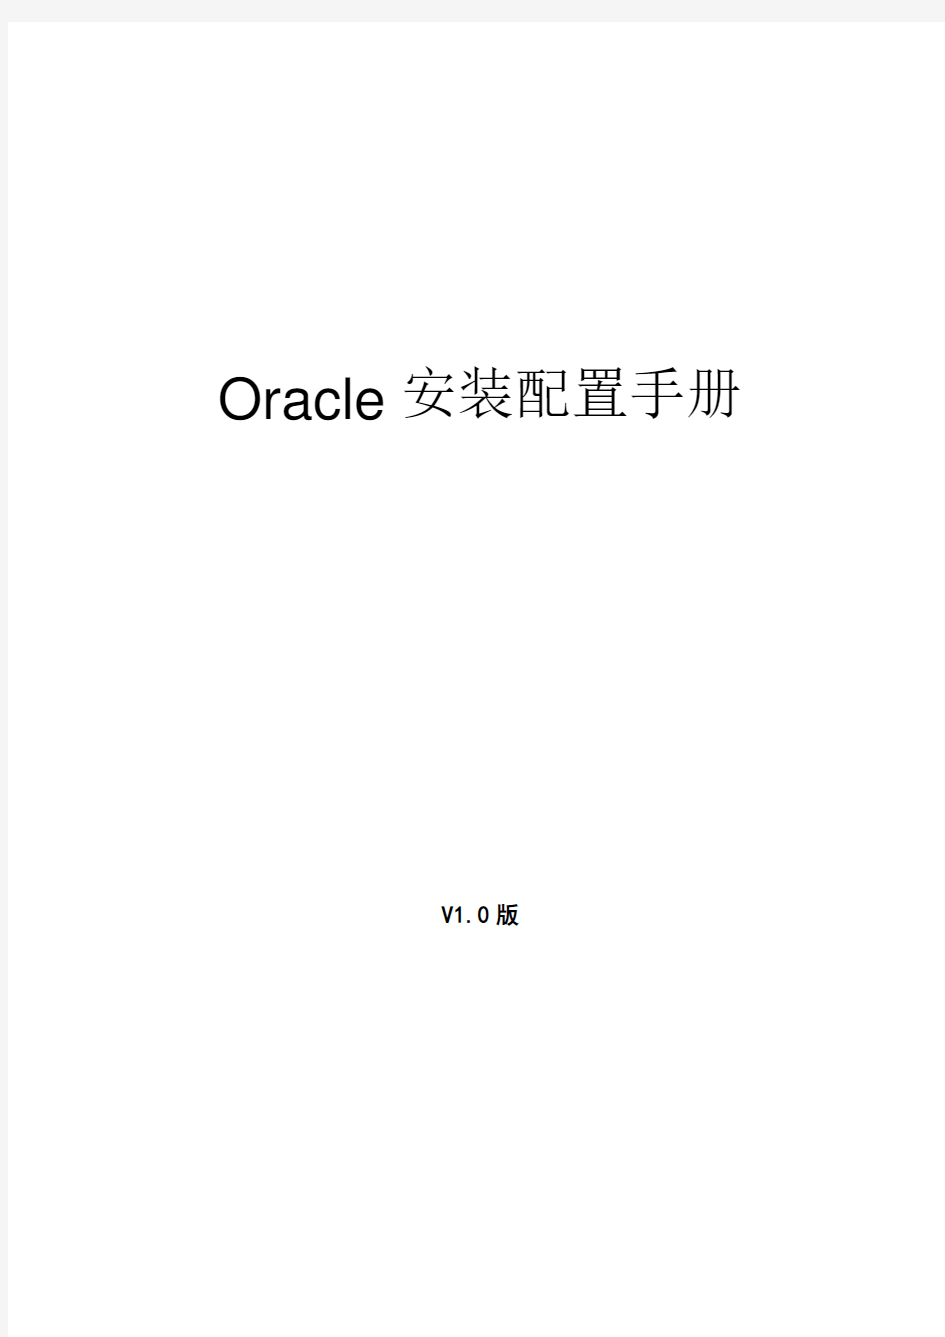 Linux-oracle11g安装配置手册